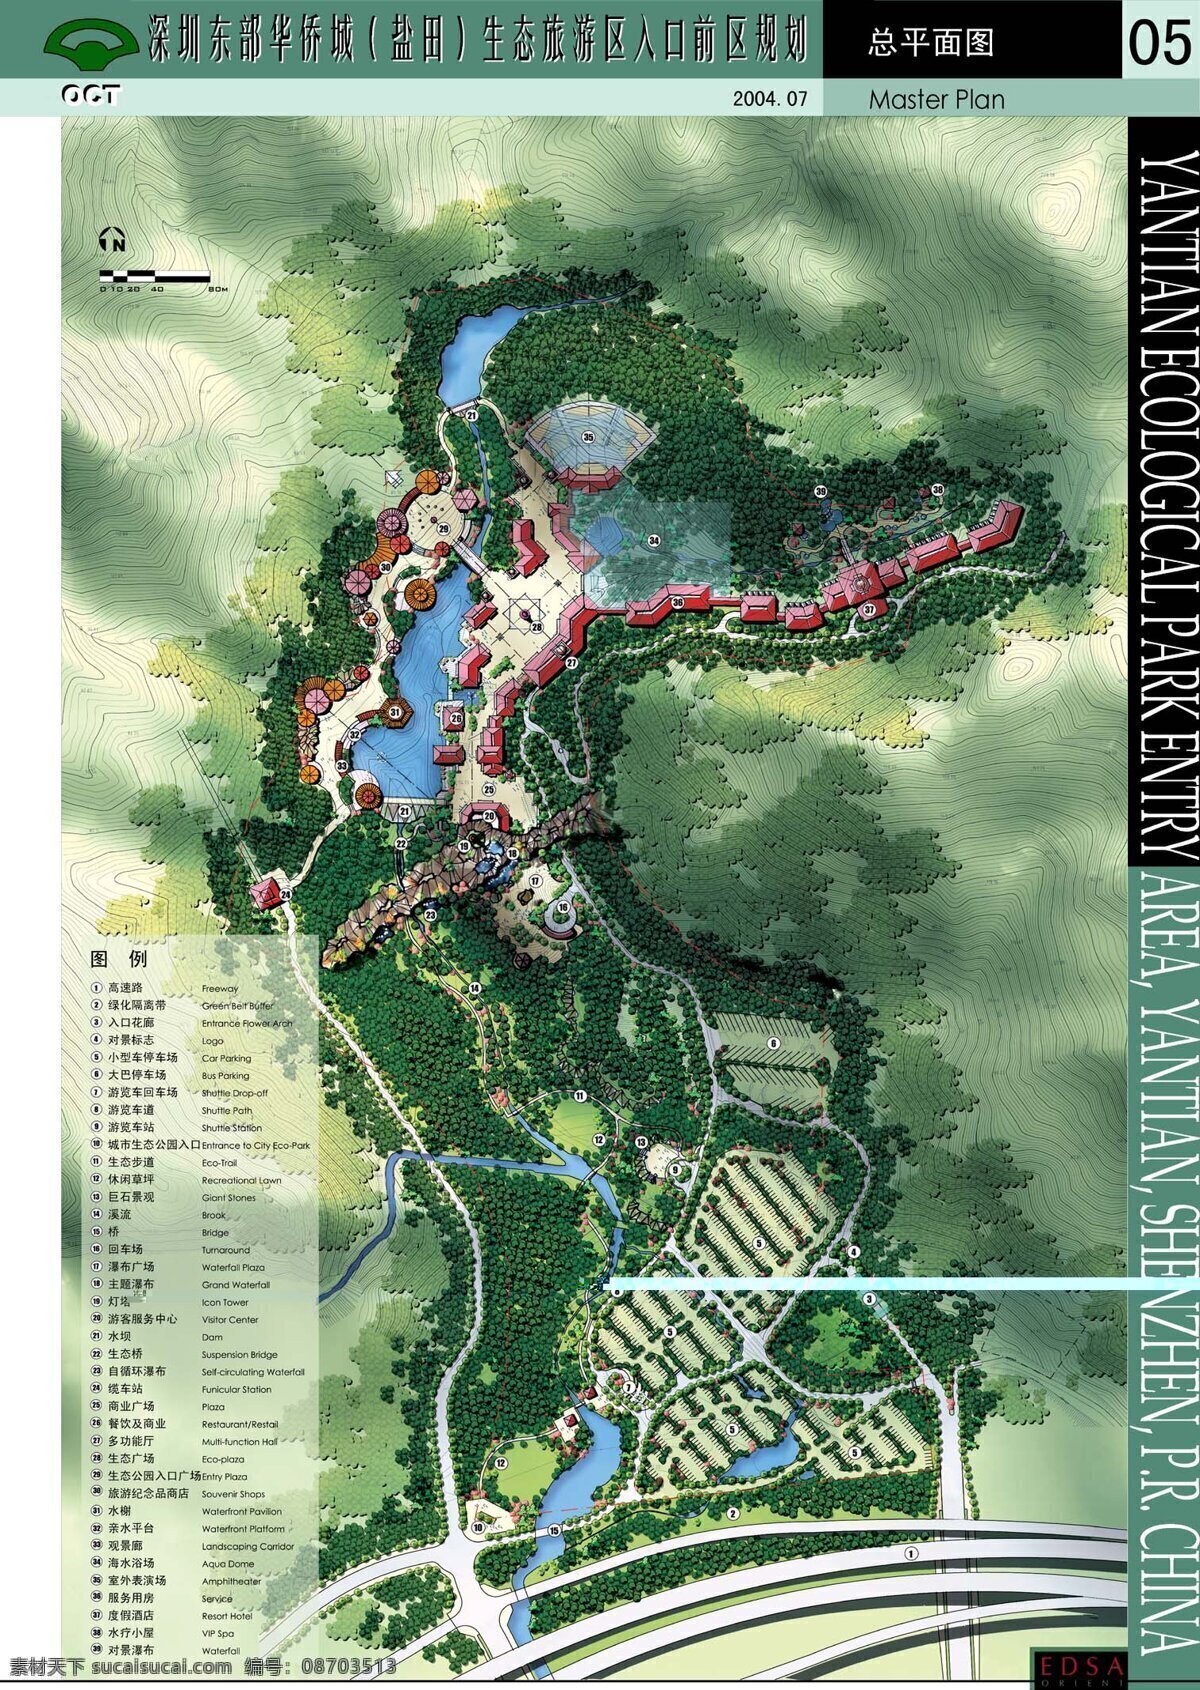 深圳 东部 华侨城 生态 旅游区 入口 前 区 规划 景观设计 m 园林 景观 方案文本 旅游规划 白色